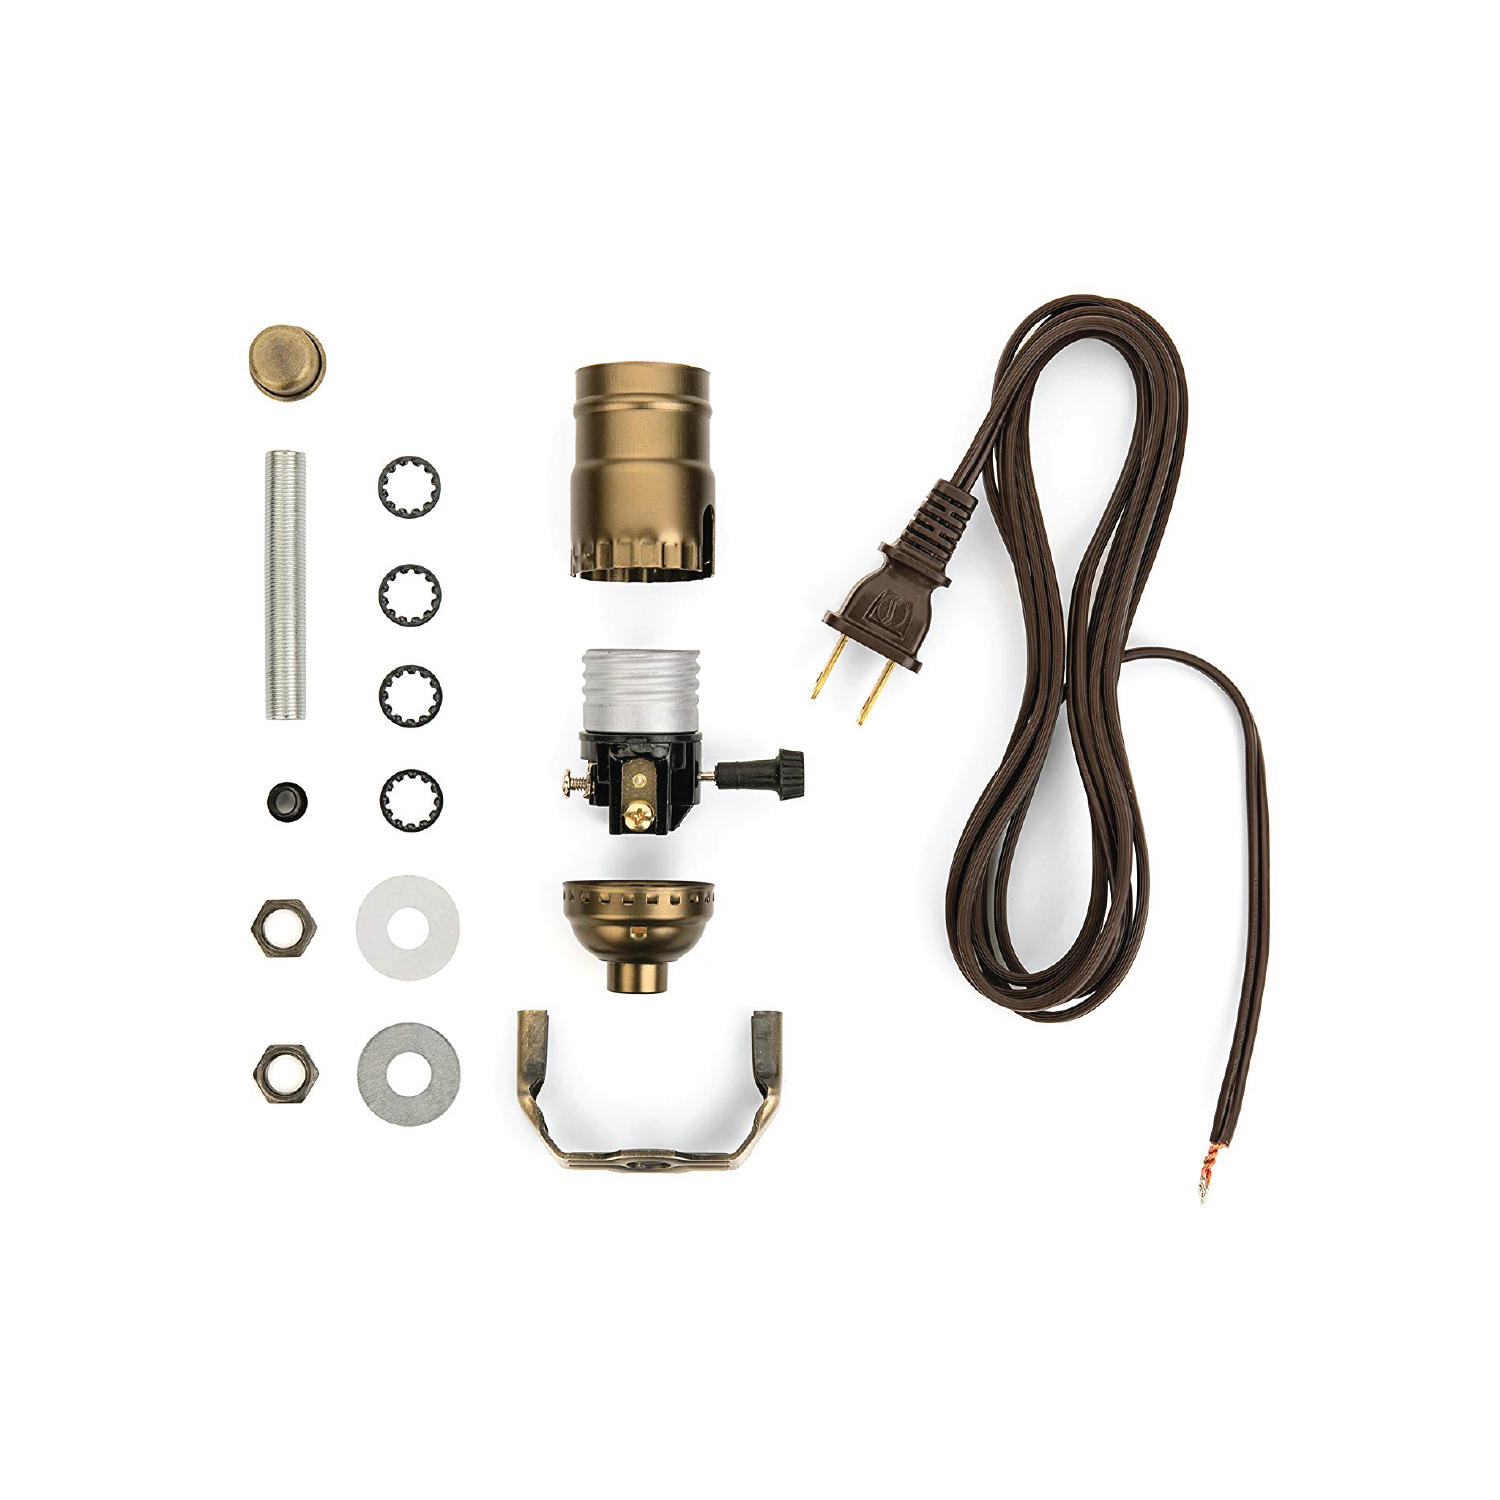 Royal Designs DIY Lamp Making Kit - Make, Repurpose, and Repair – 3-Way  Socket - 8 Inch Harp - Antique Brass